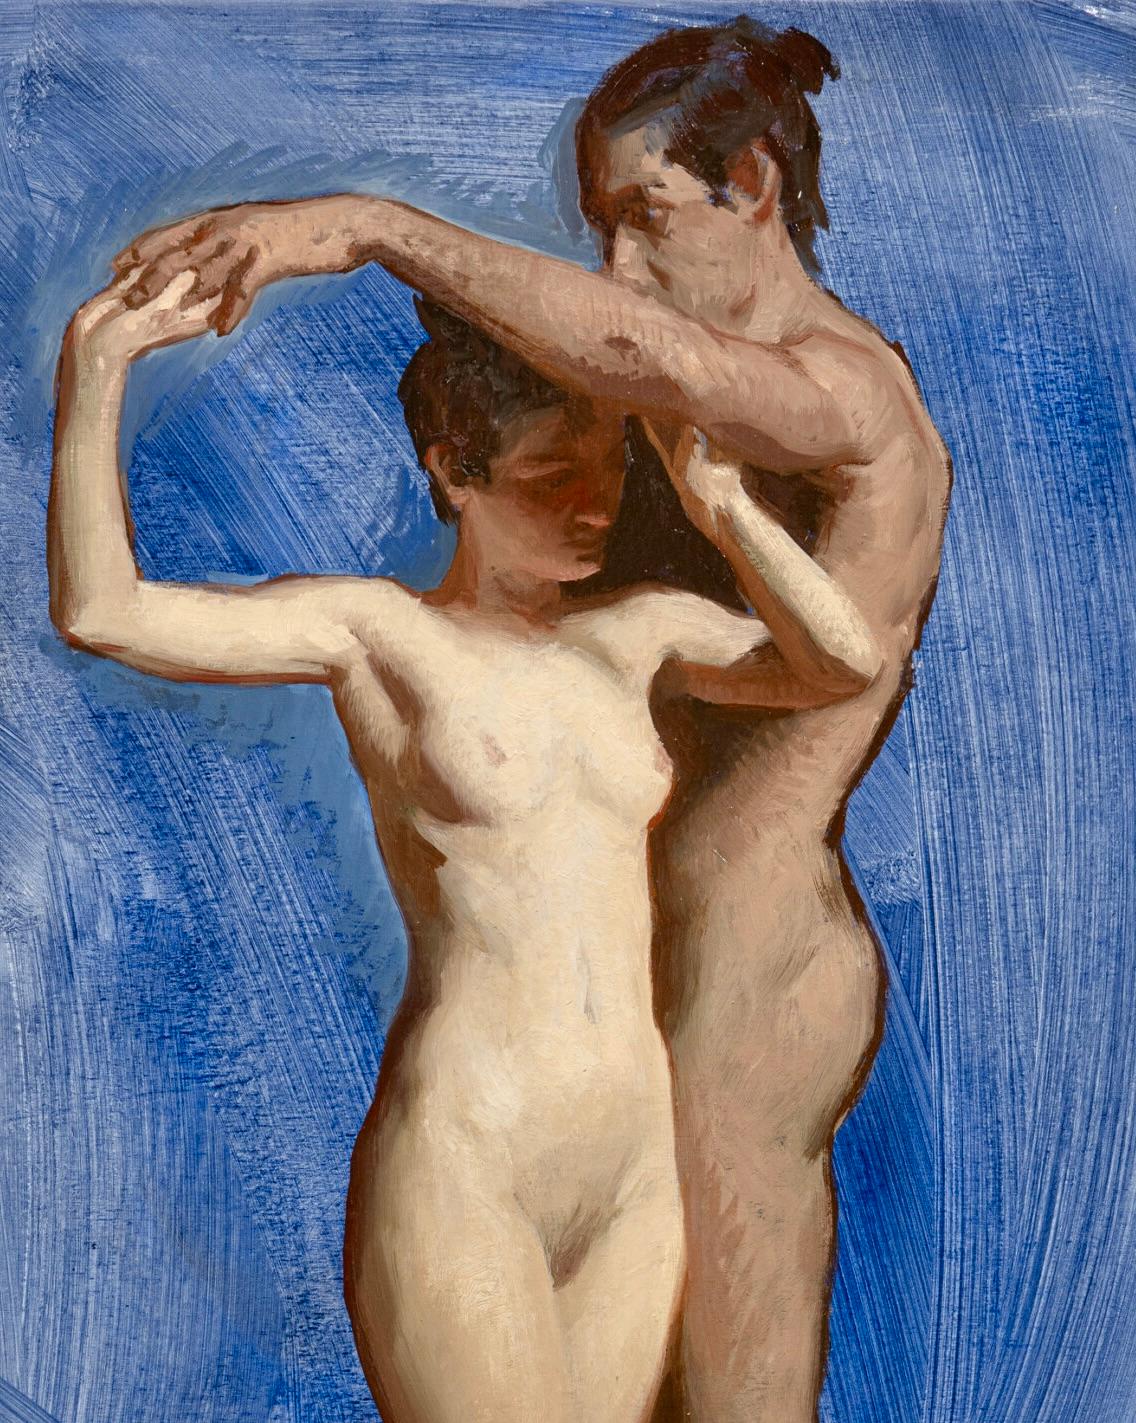 Paar #2- Zeitgenössisches Gemälde des 21. Jahrhunderts mit einem tanzenden nackten Mann und einer Frau  – Painting von Daniela Astone